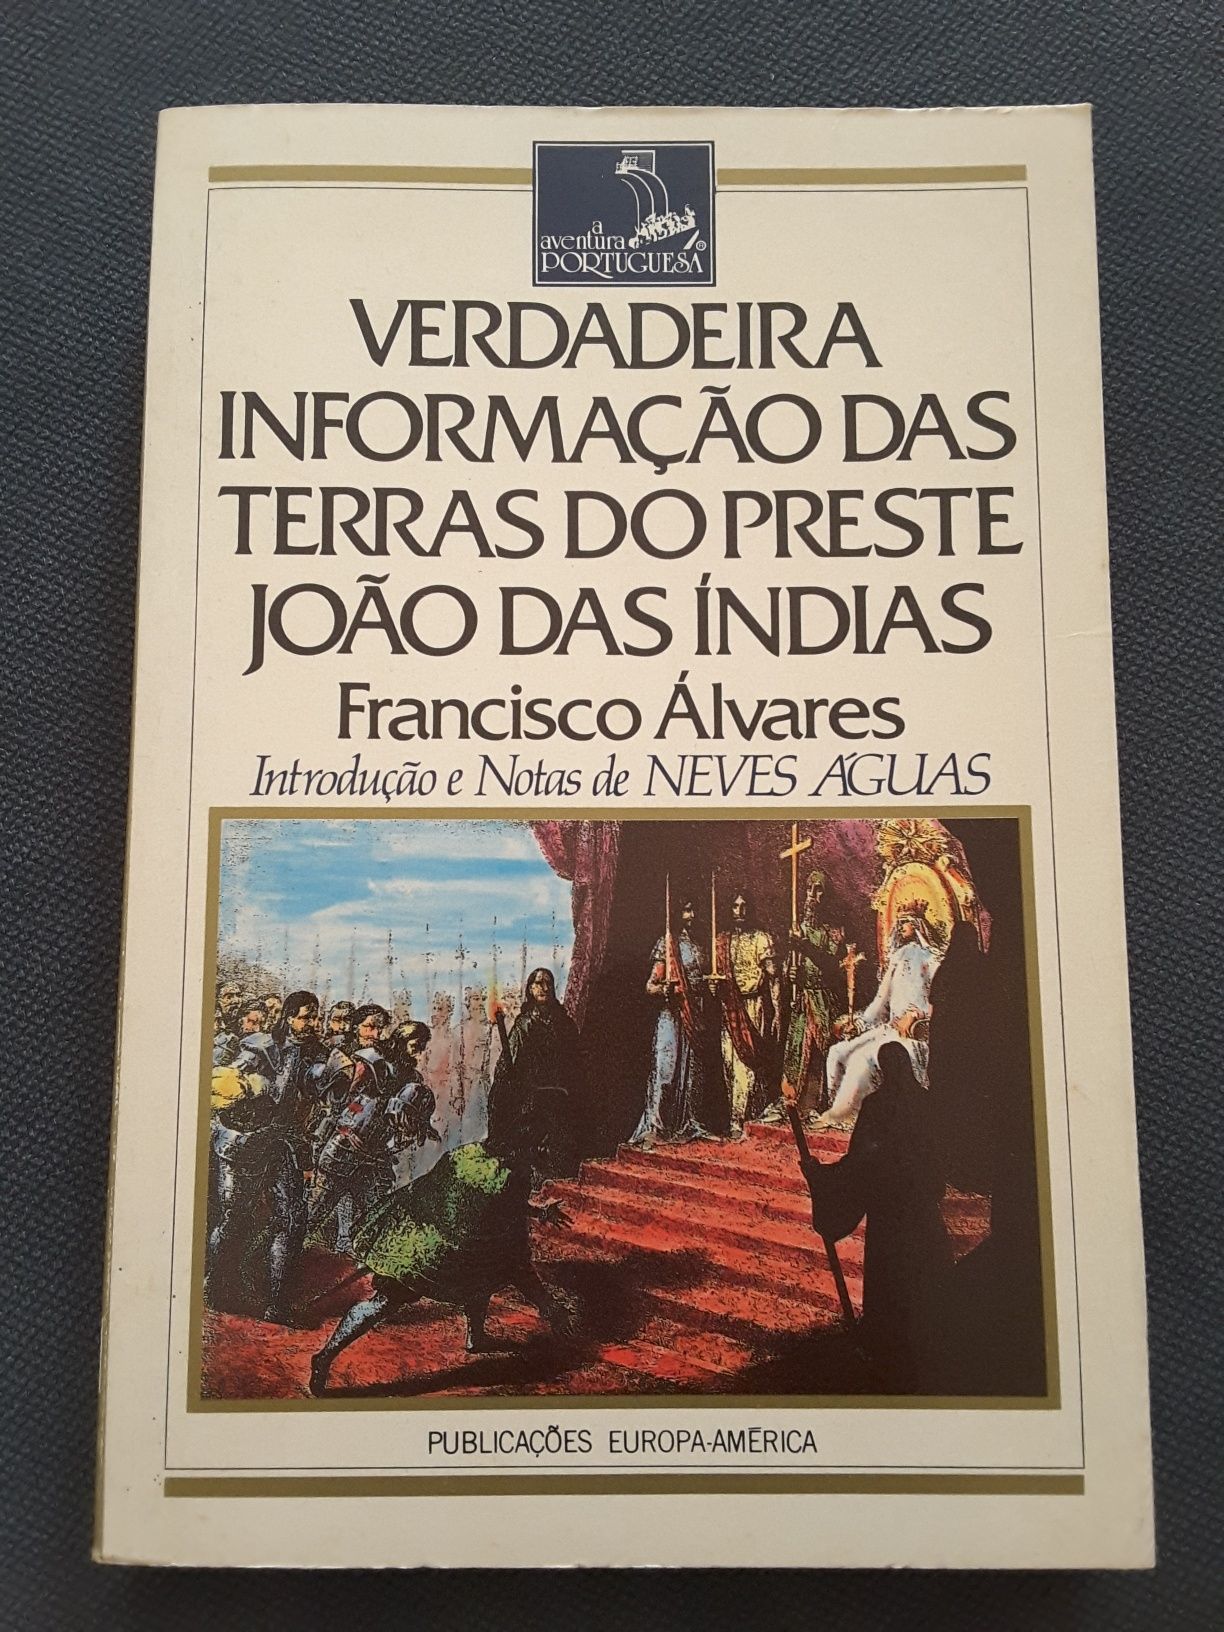 Informação das Terras do Preste João / Os Apelidos Portugueses